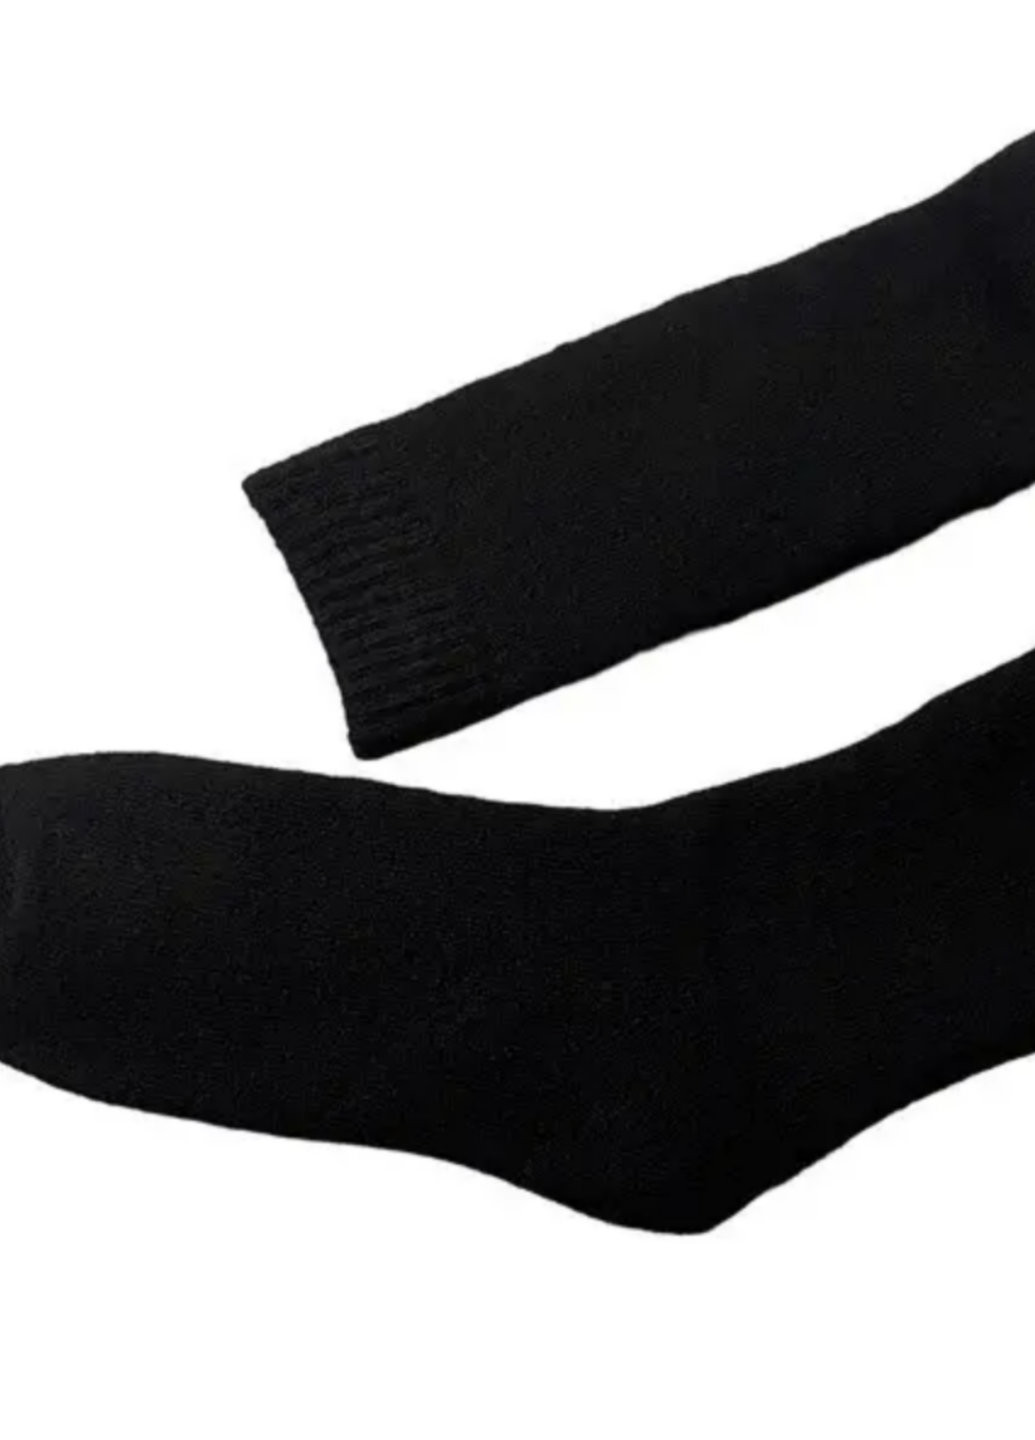 Високі вовняні шкарпетки теплі YIBATE 37-43 чорний No Brand (270363779)